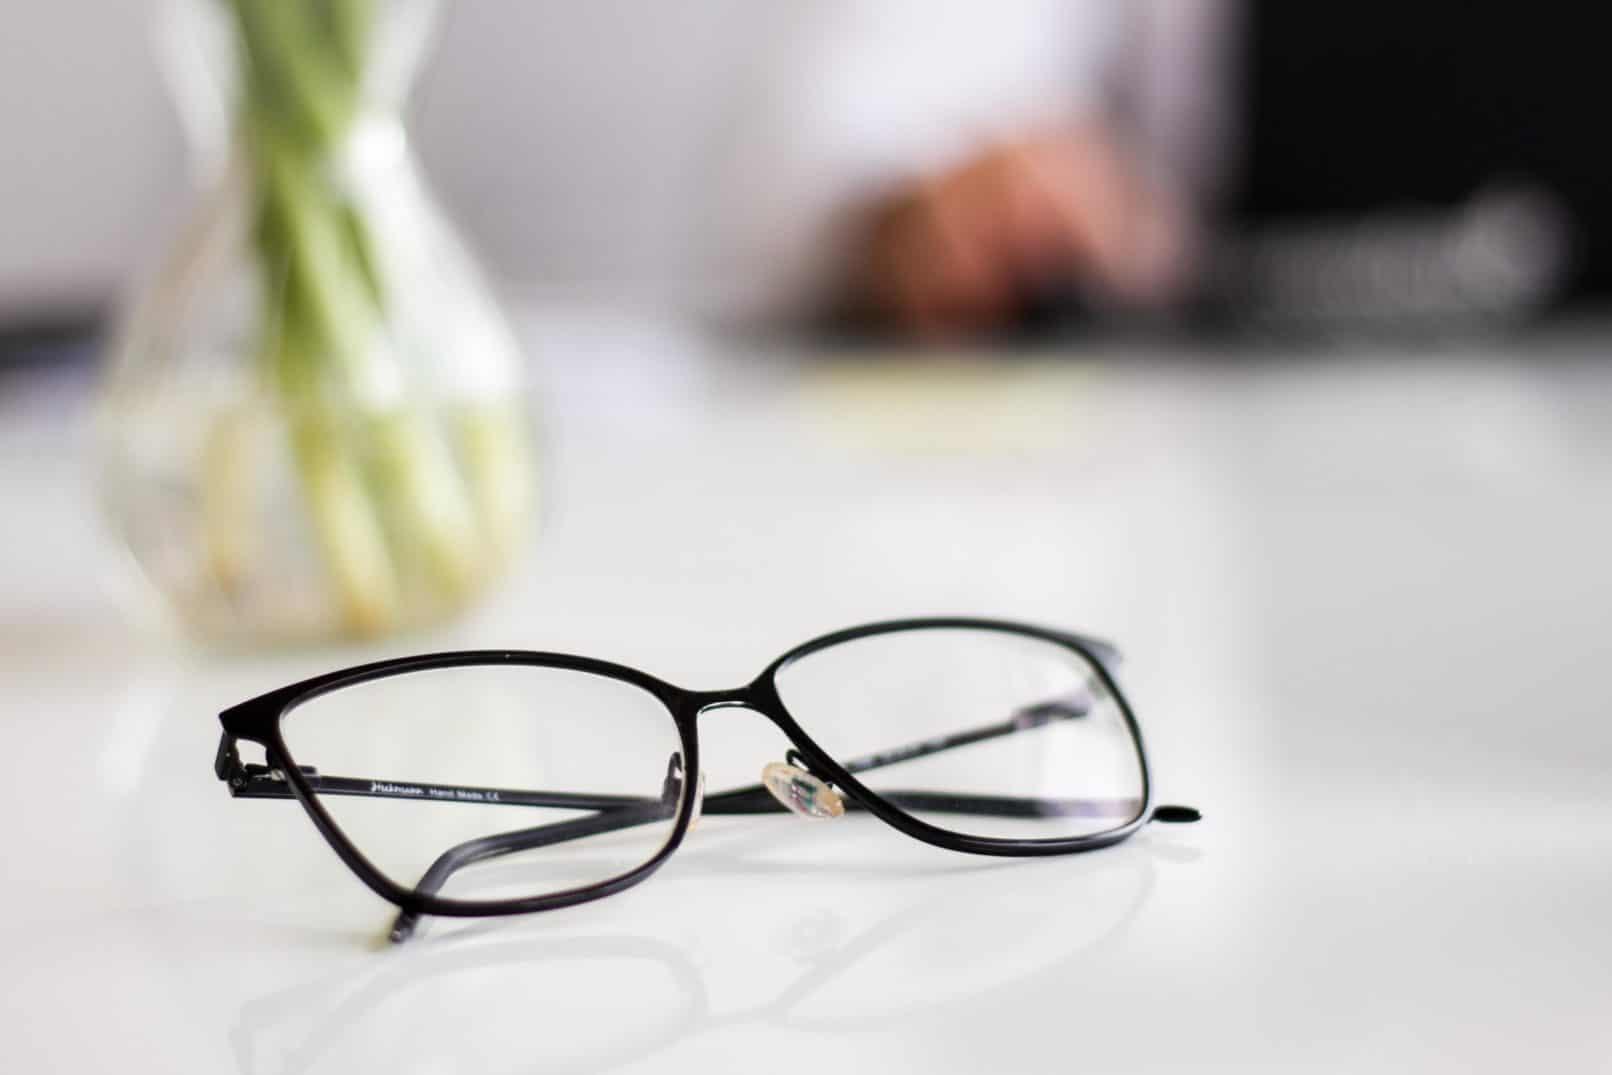 Benarkah Sering Lepas Kacamata Bisa Menyembuhkan Mata Minus? Simak Apa Kata Dokter